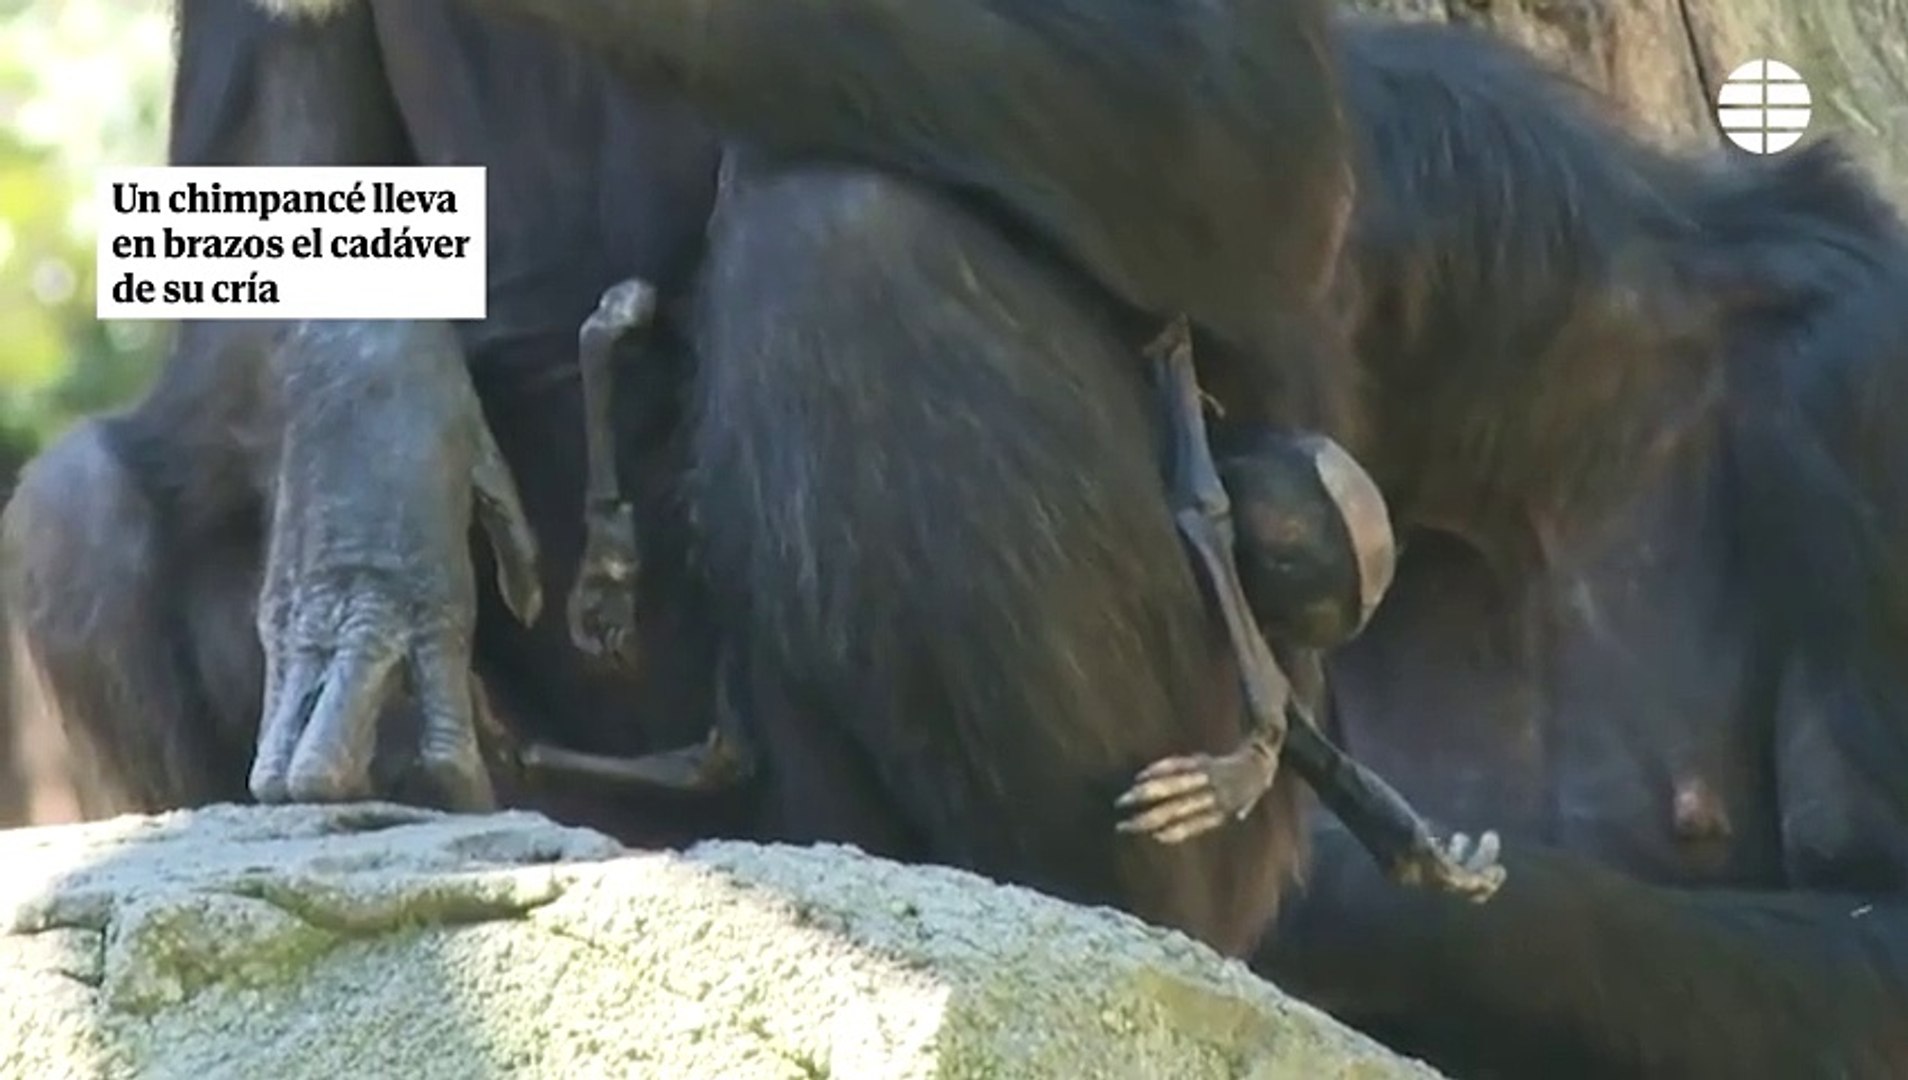 Una chimpanc del Bioparc de Valencia lleva en brazos el cadver de su cra desde hace dos meses